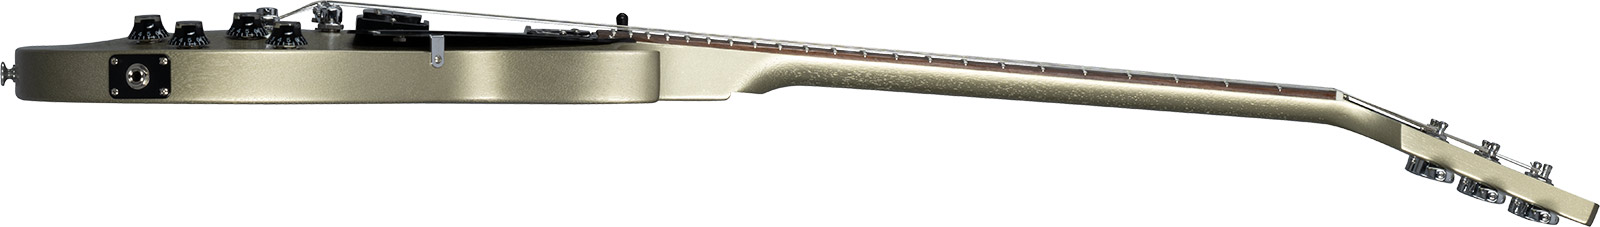 Gibson Les Paul Modern Lite 2h Ht Rw - Gold Mist Satin - Enkel gesneden elektrische gitaar - Variation 2